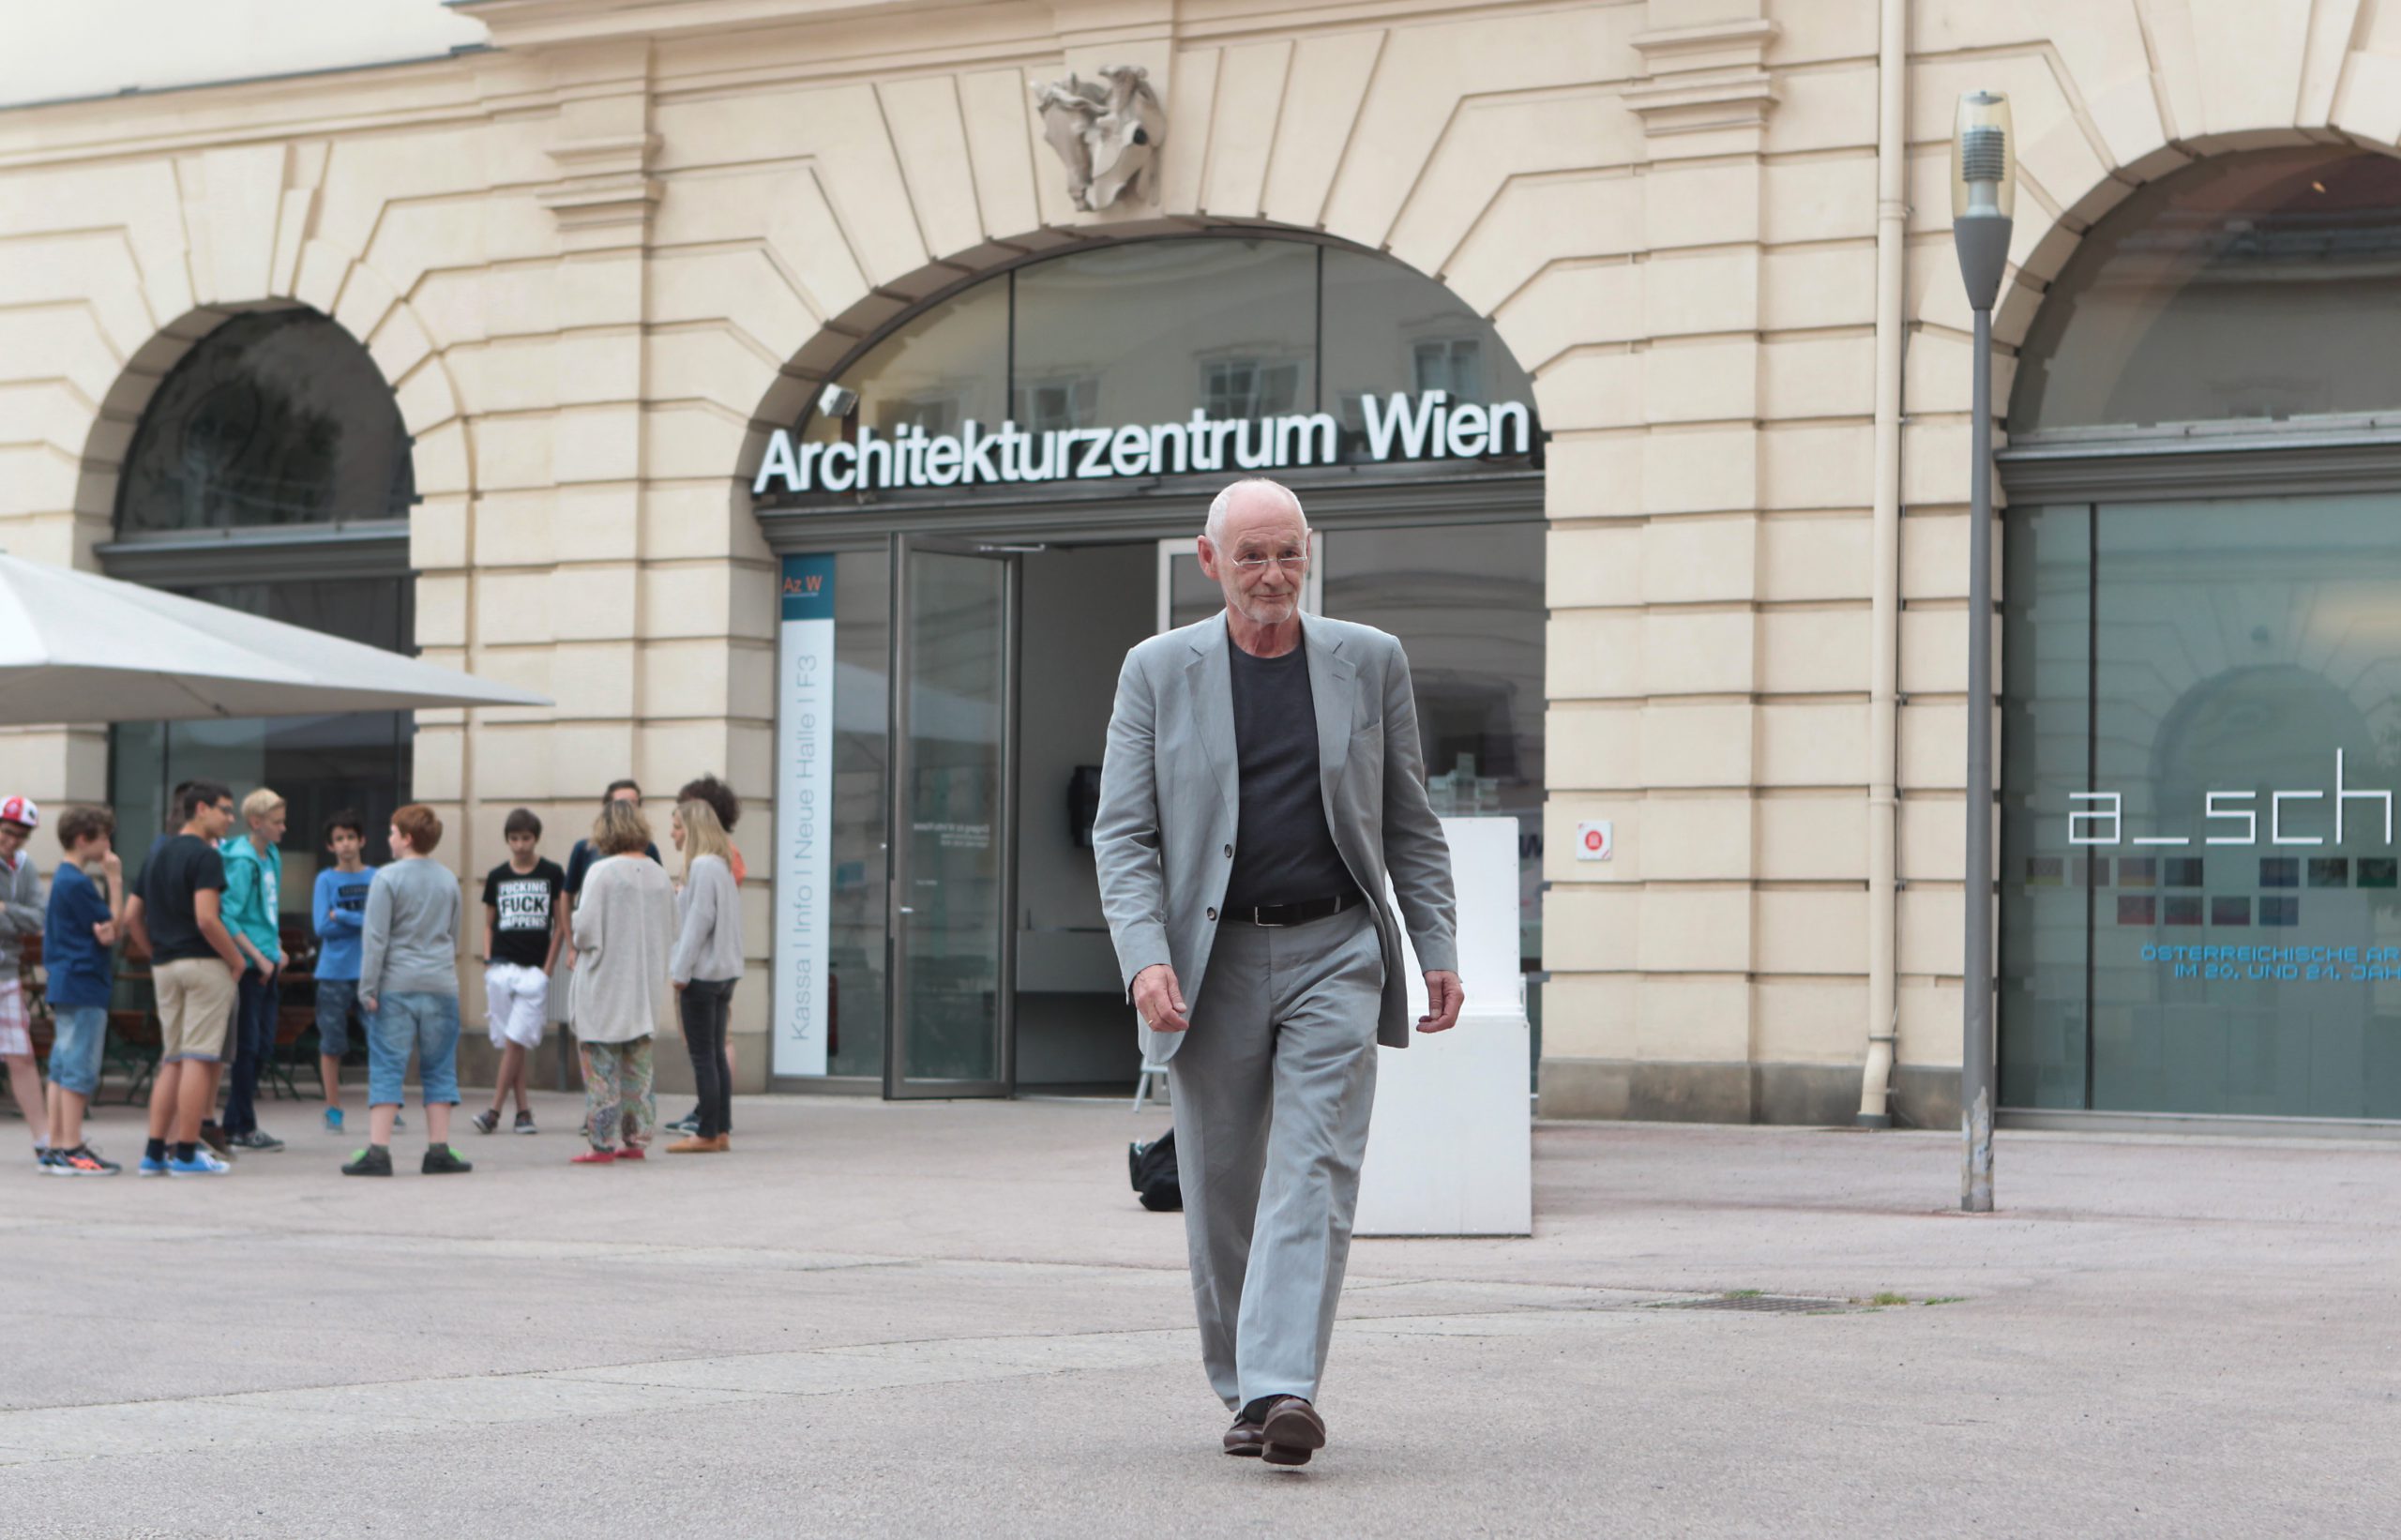 Mann in grauem Anzug vor Eingang Architekturzentrum Wien